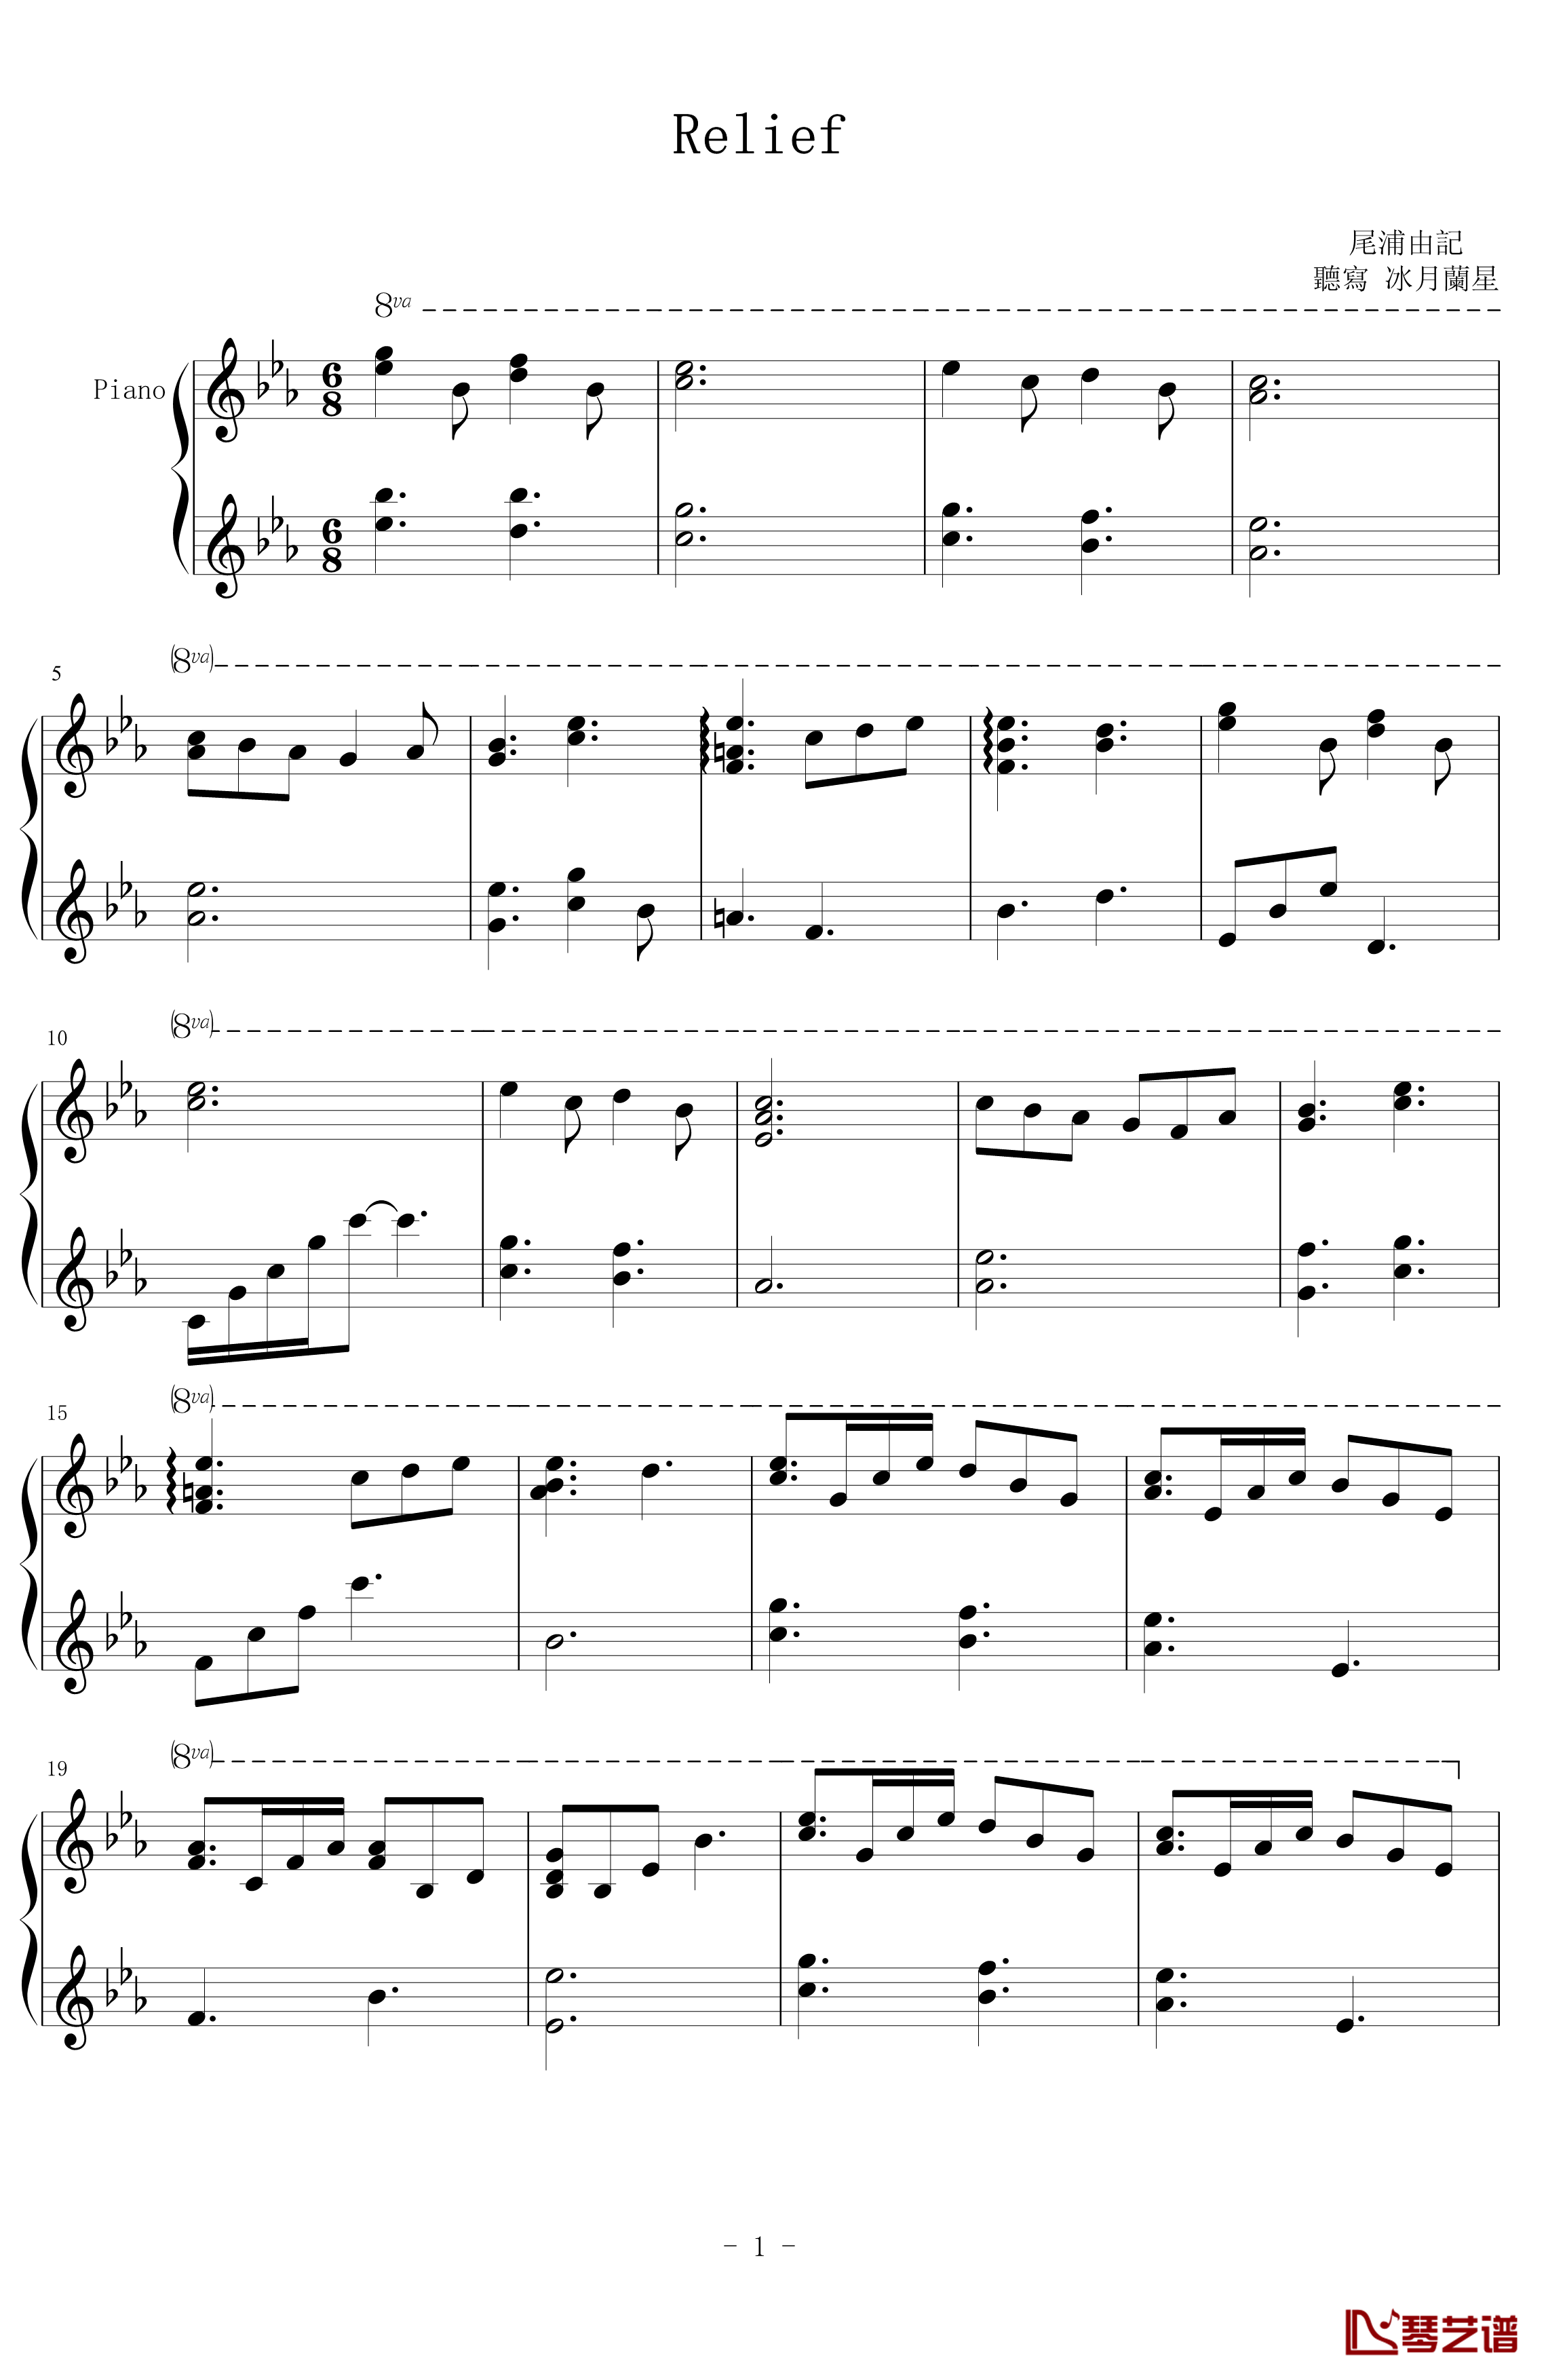 Relief钢琴谱-尾浦游纪-潘多拉之心1